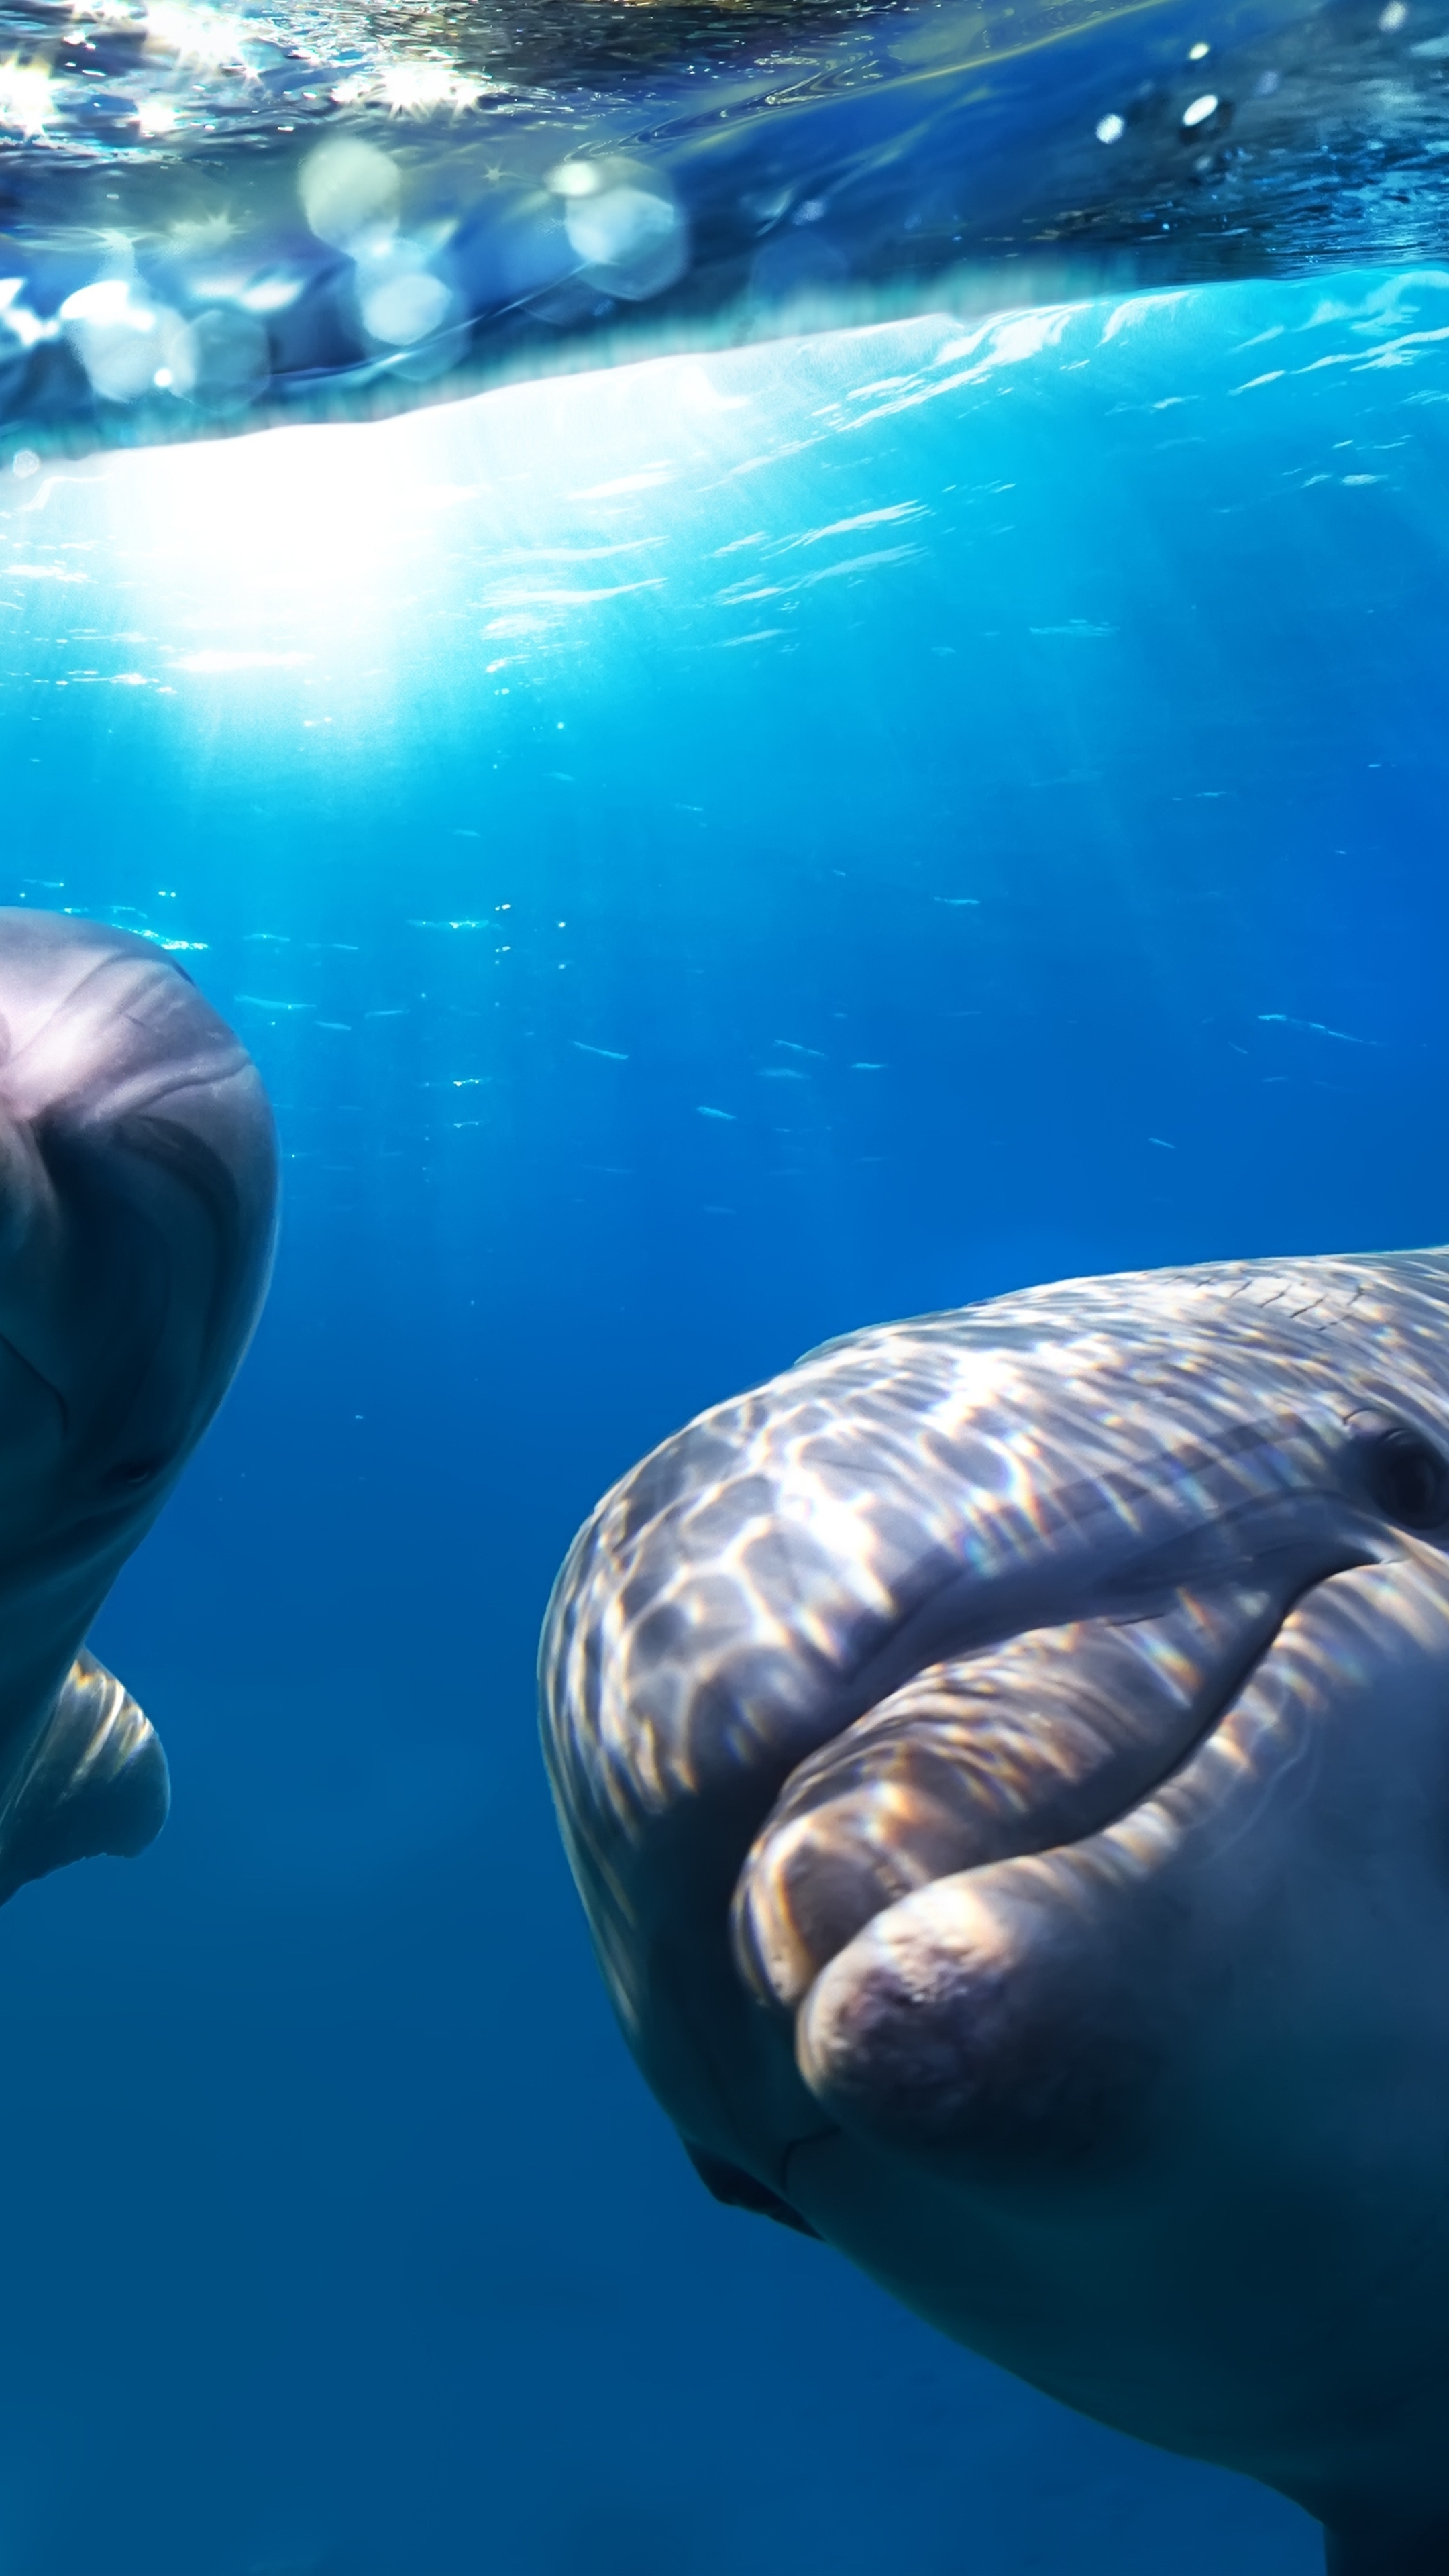 Картинка: Дельфины, плавники, улыбка, глаза, взгляд, вода, свет